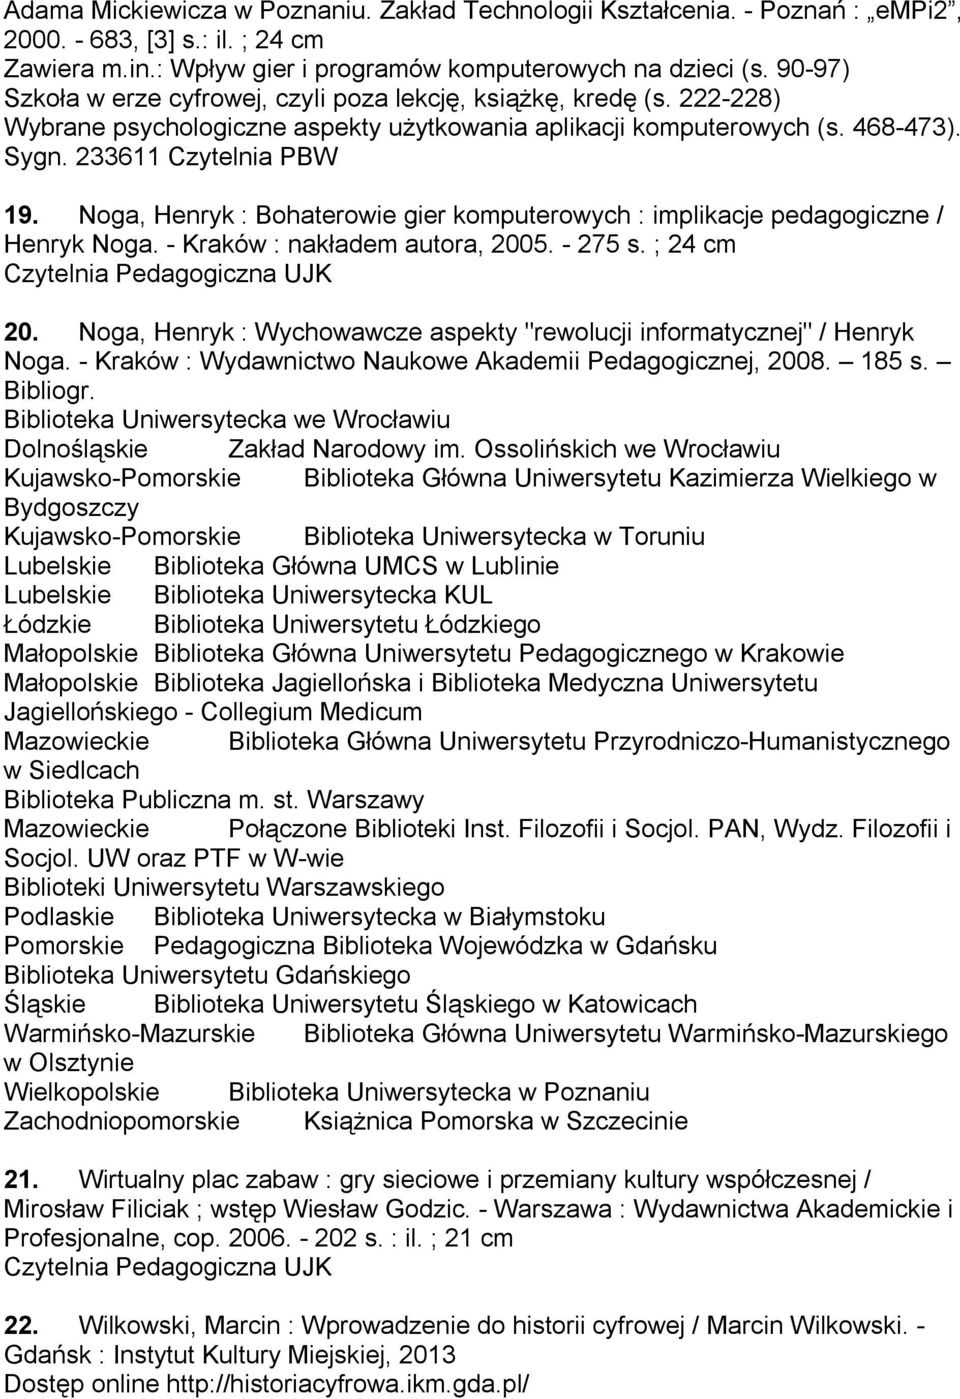 Noga, Henryk : Bohaterowie gier komputerowych : implikacje pedagogiczne / Henryk Noga. - Kraków : nakładem autora, 2005. - 275 s. ; 24 cm 20.